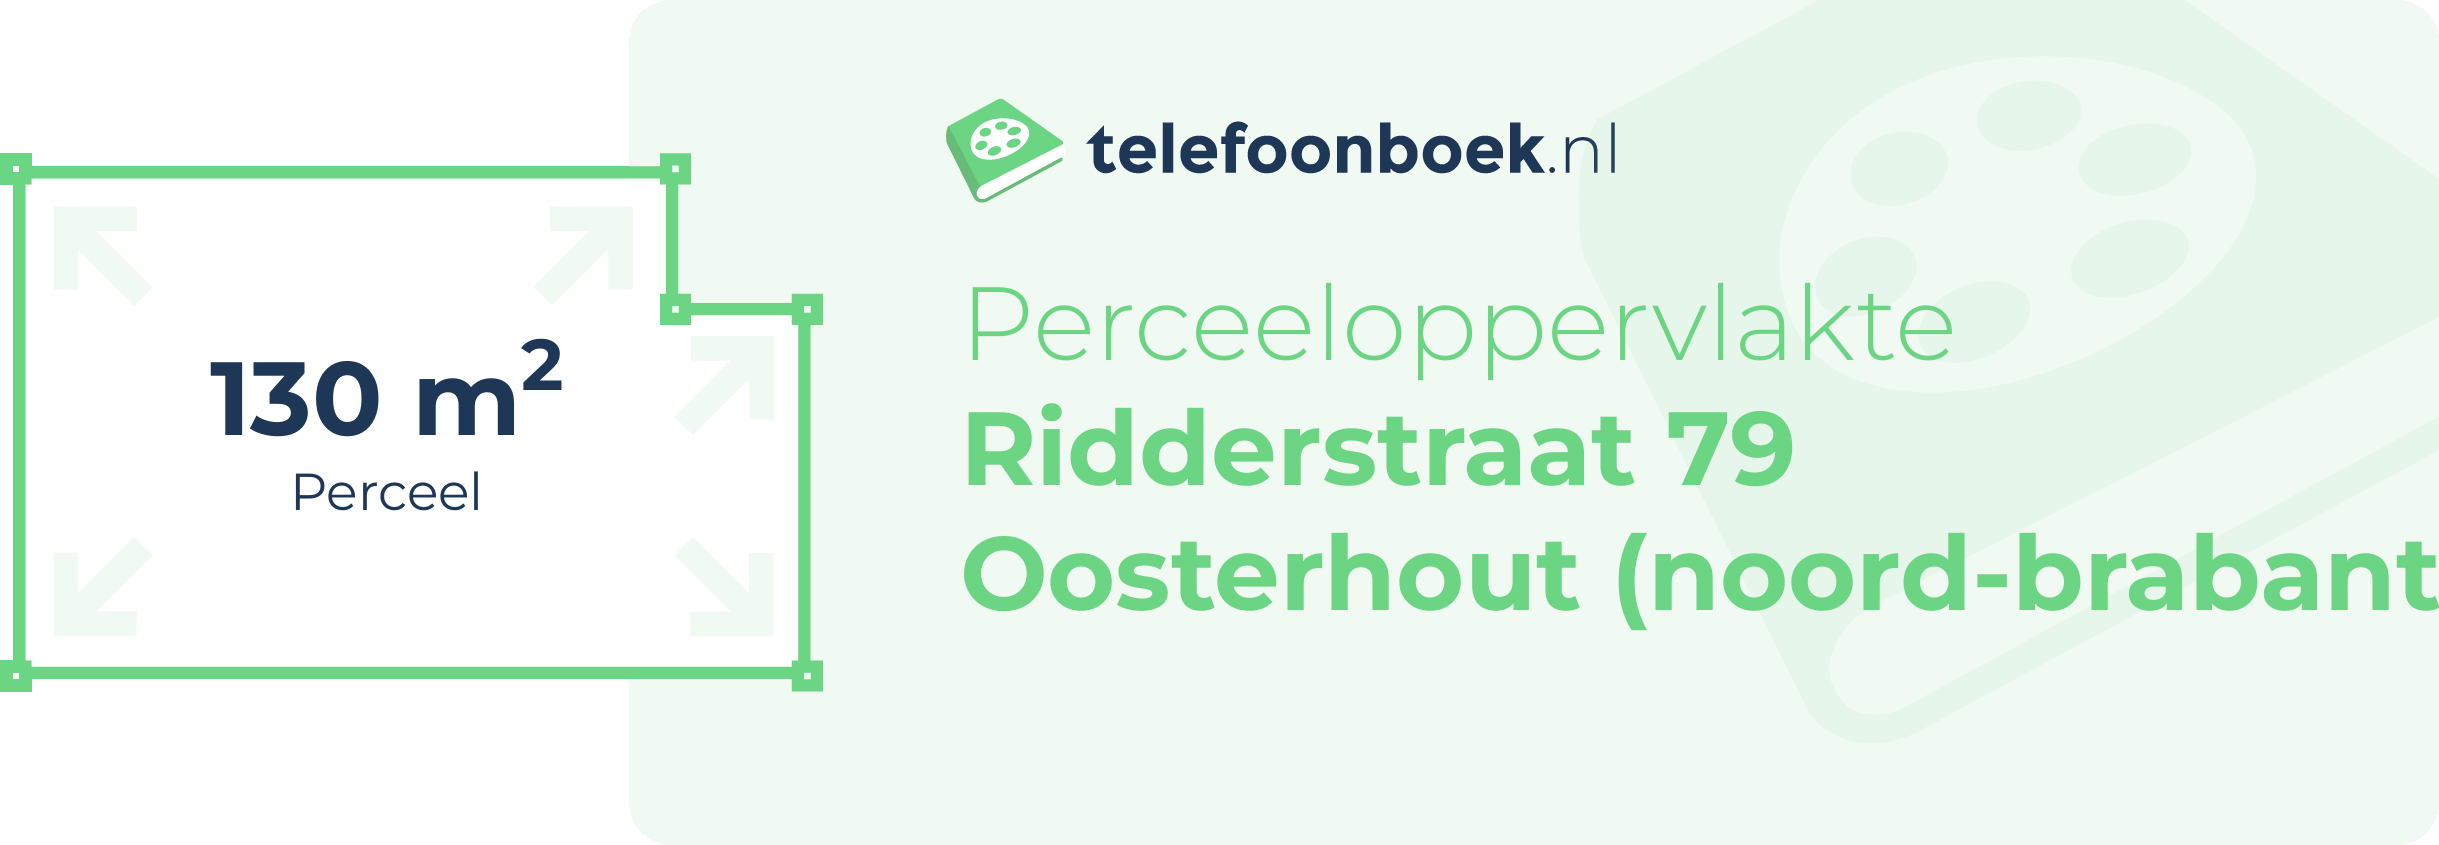 Perceeloppervlakte Ridderstraat 79 Oosterhout (Noord-Brabant)